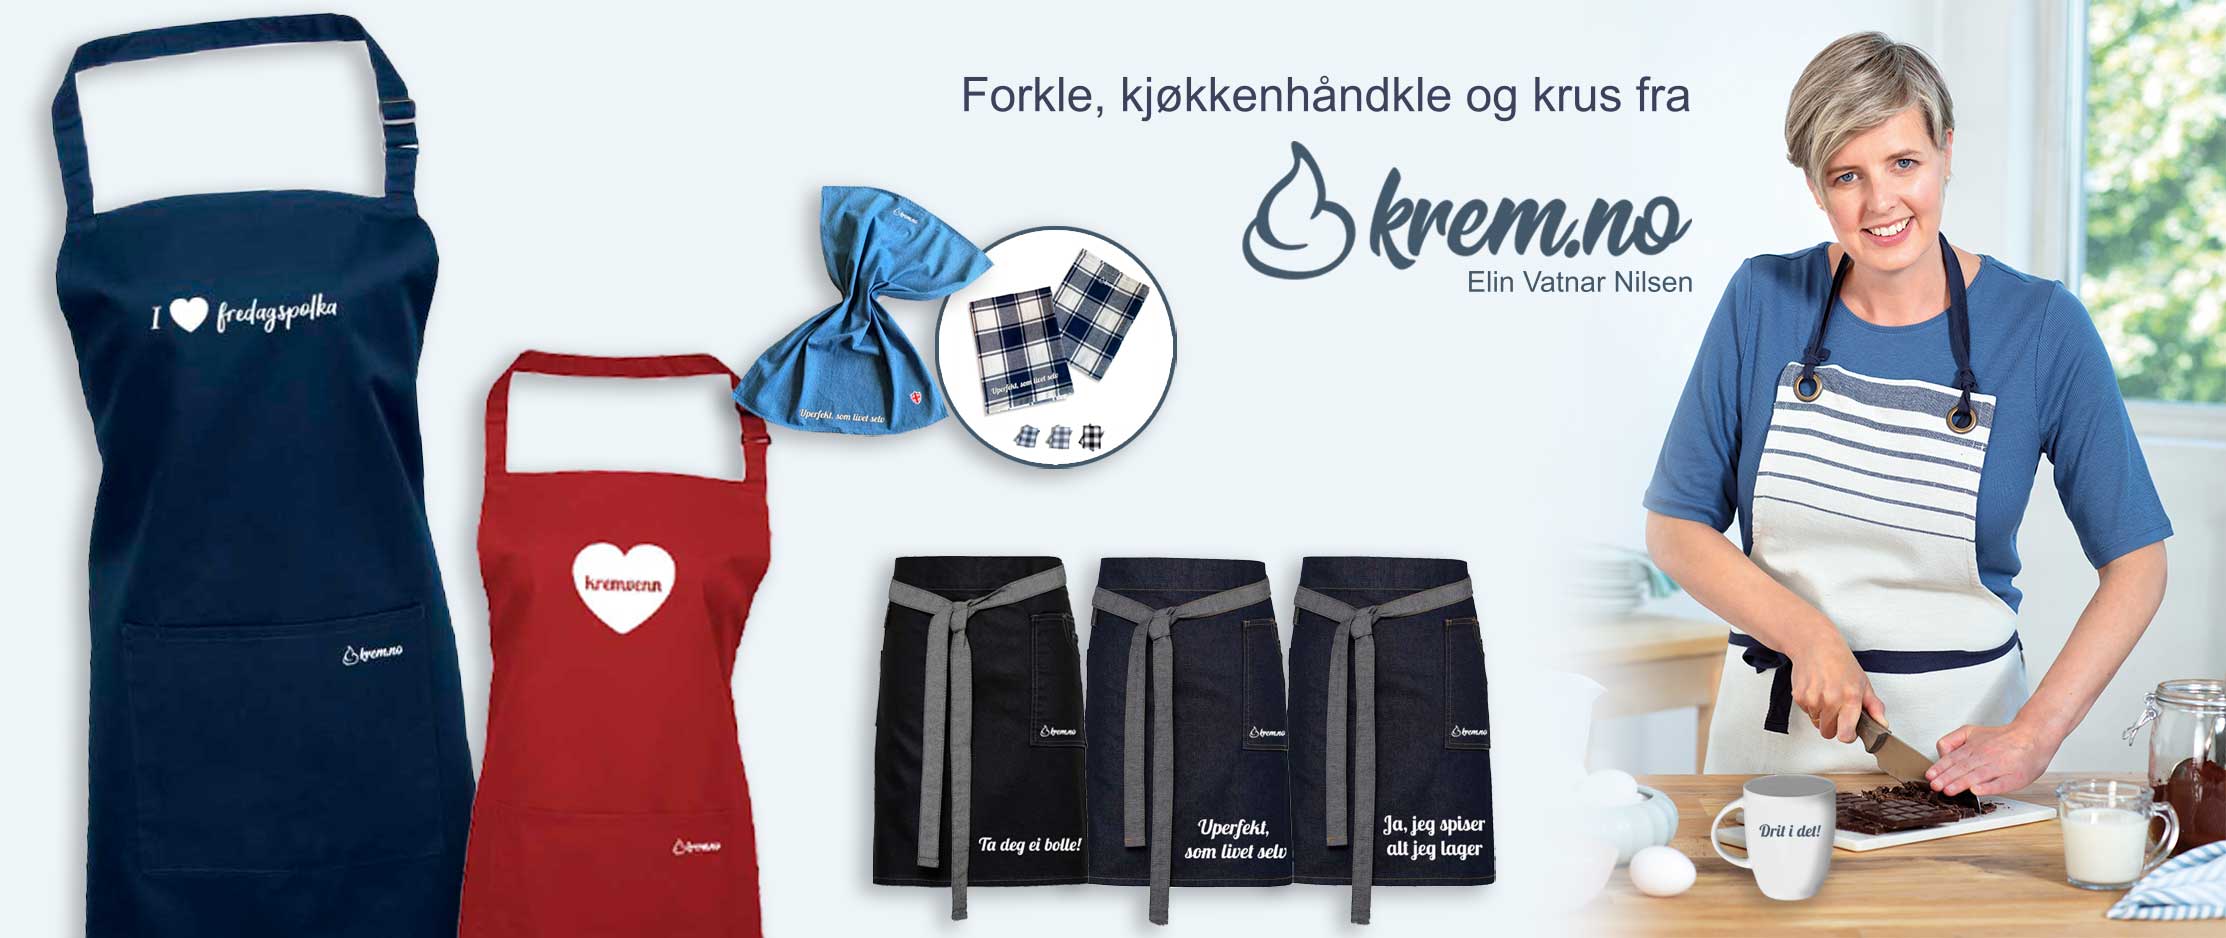 Banner med forklær, kjøkkenhåndklær og krus fra Krem.no og Elin Vatnar Nilsen